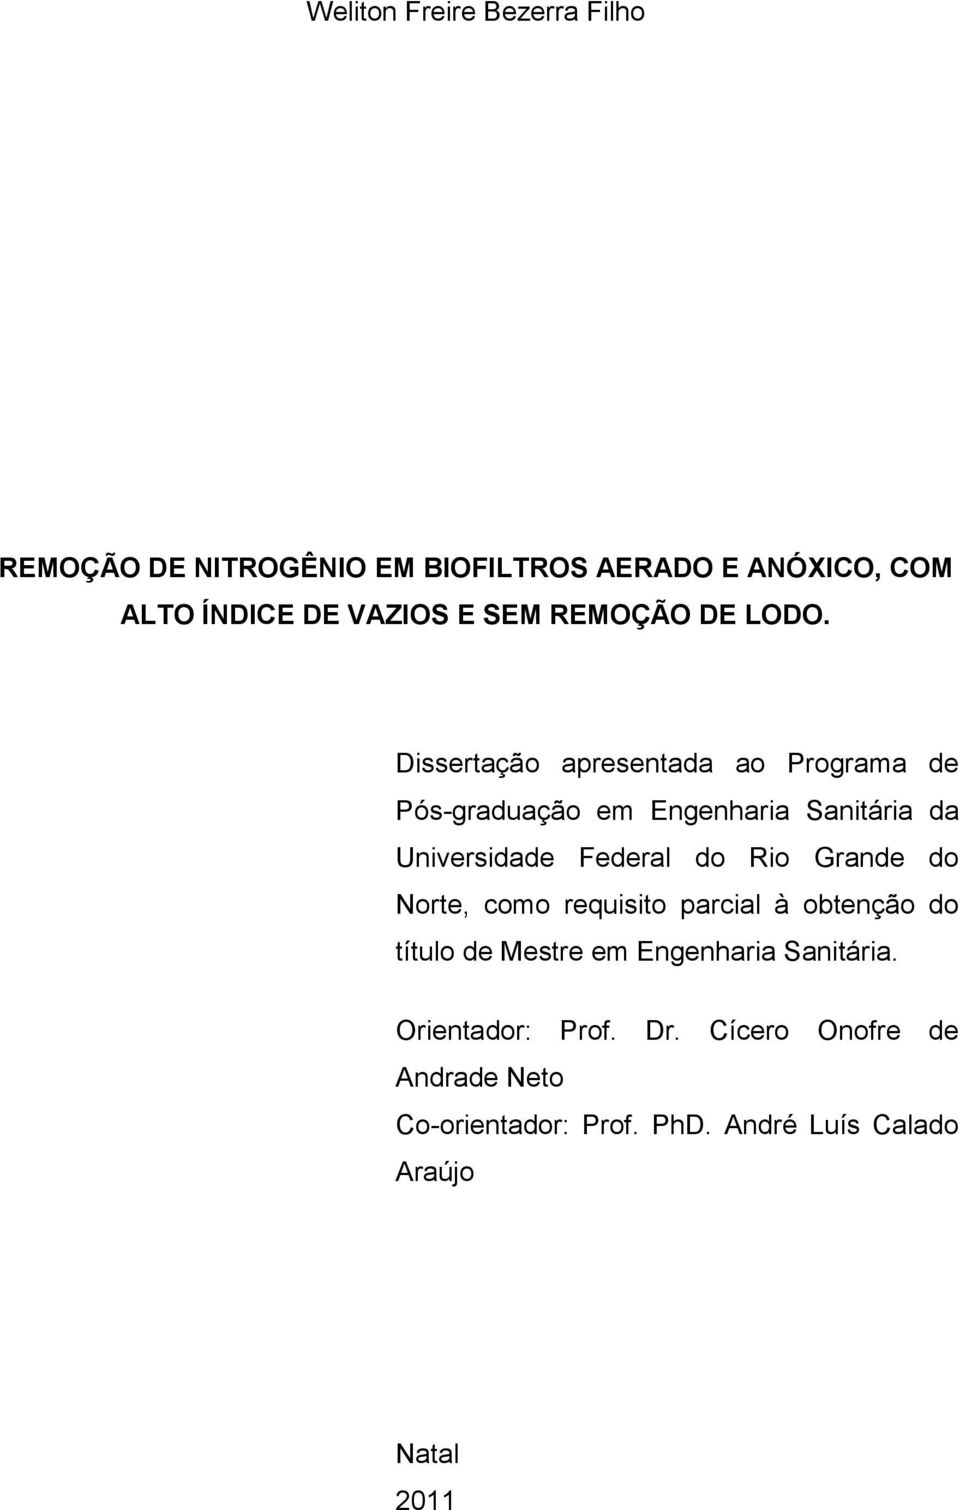 Dissertação apresentada ao Programa de Pós-graduação em Engenharia Sanitária da Universidade Federal do Rio